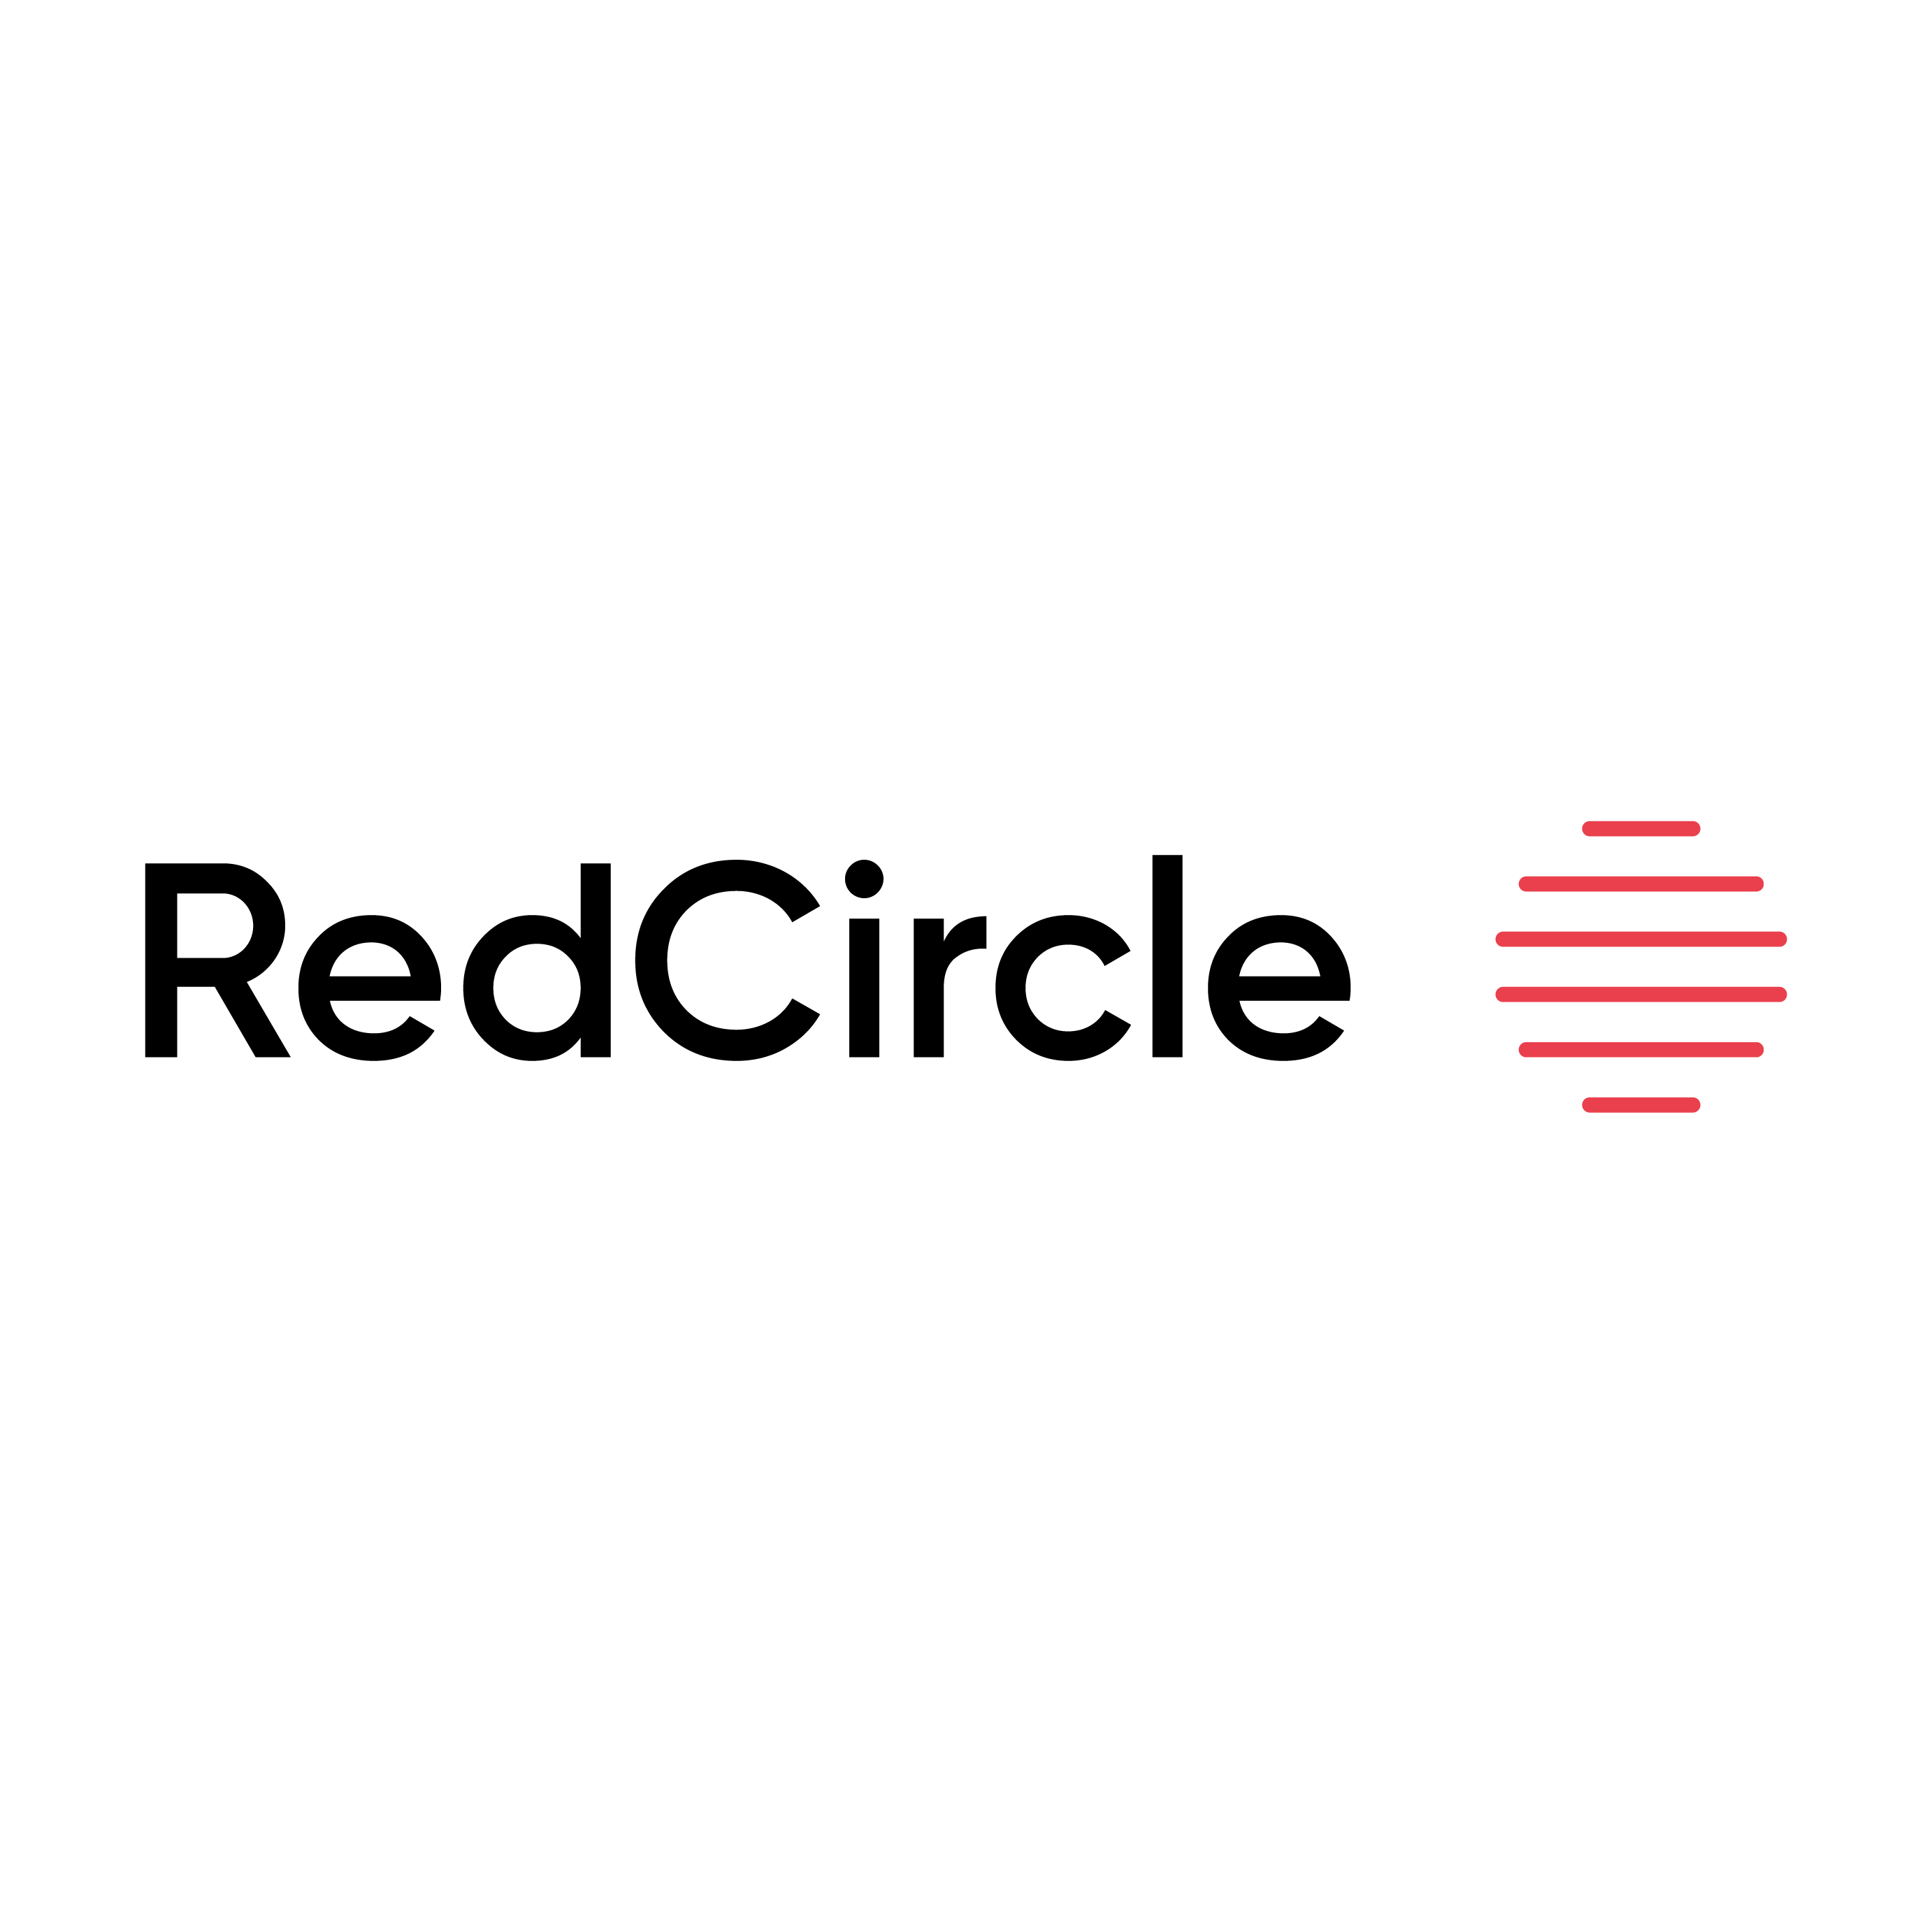 redcircle.png